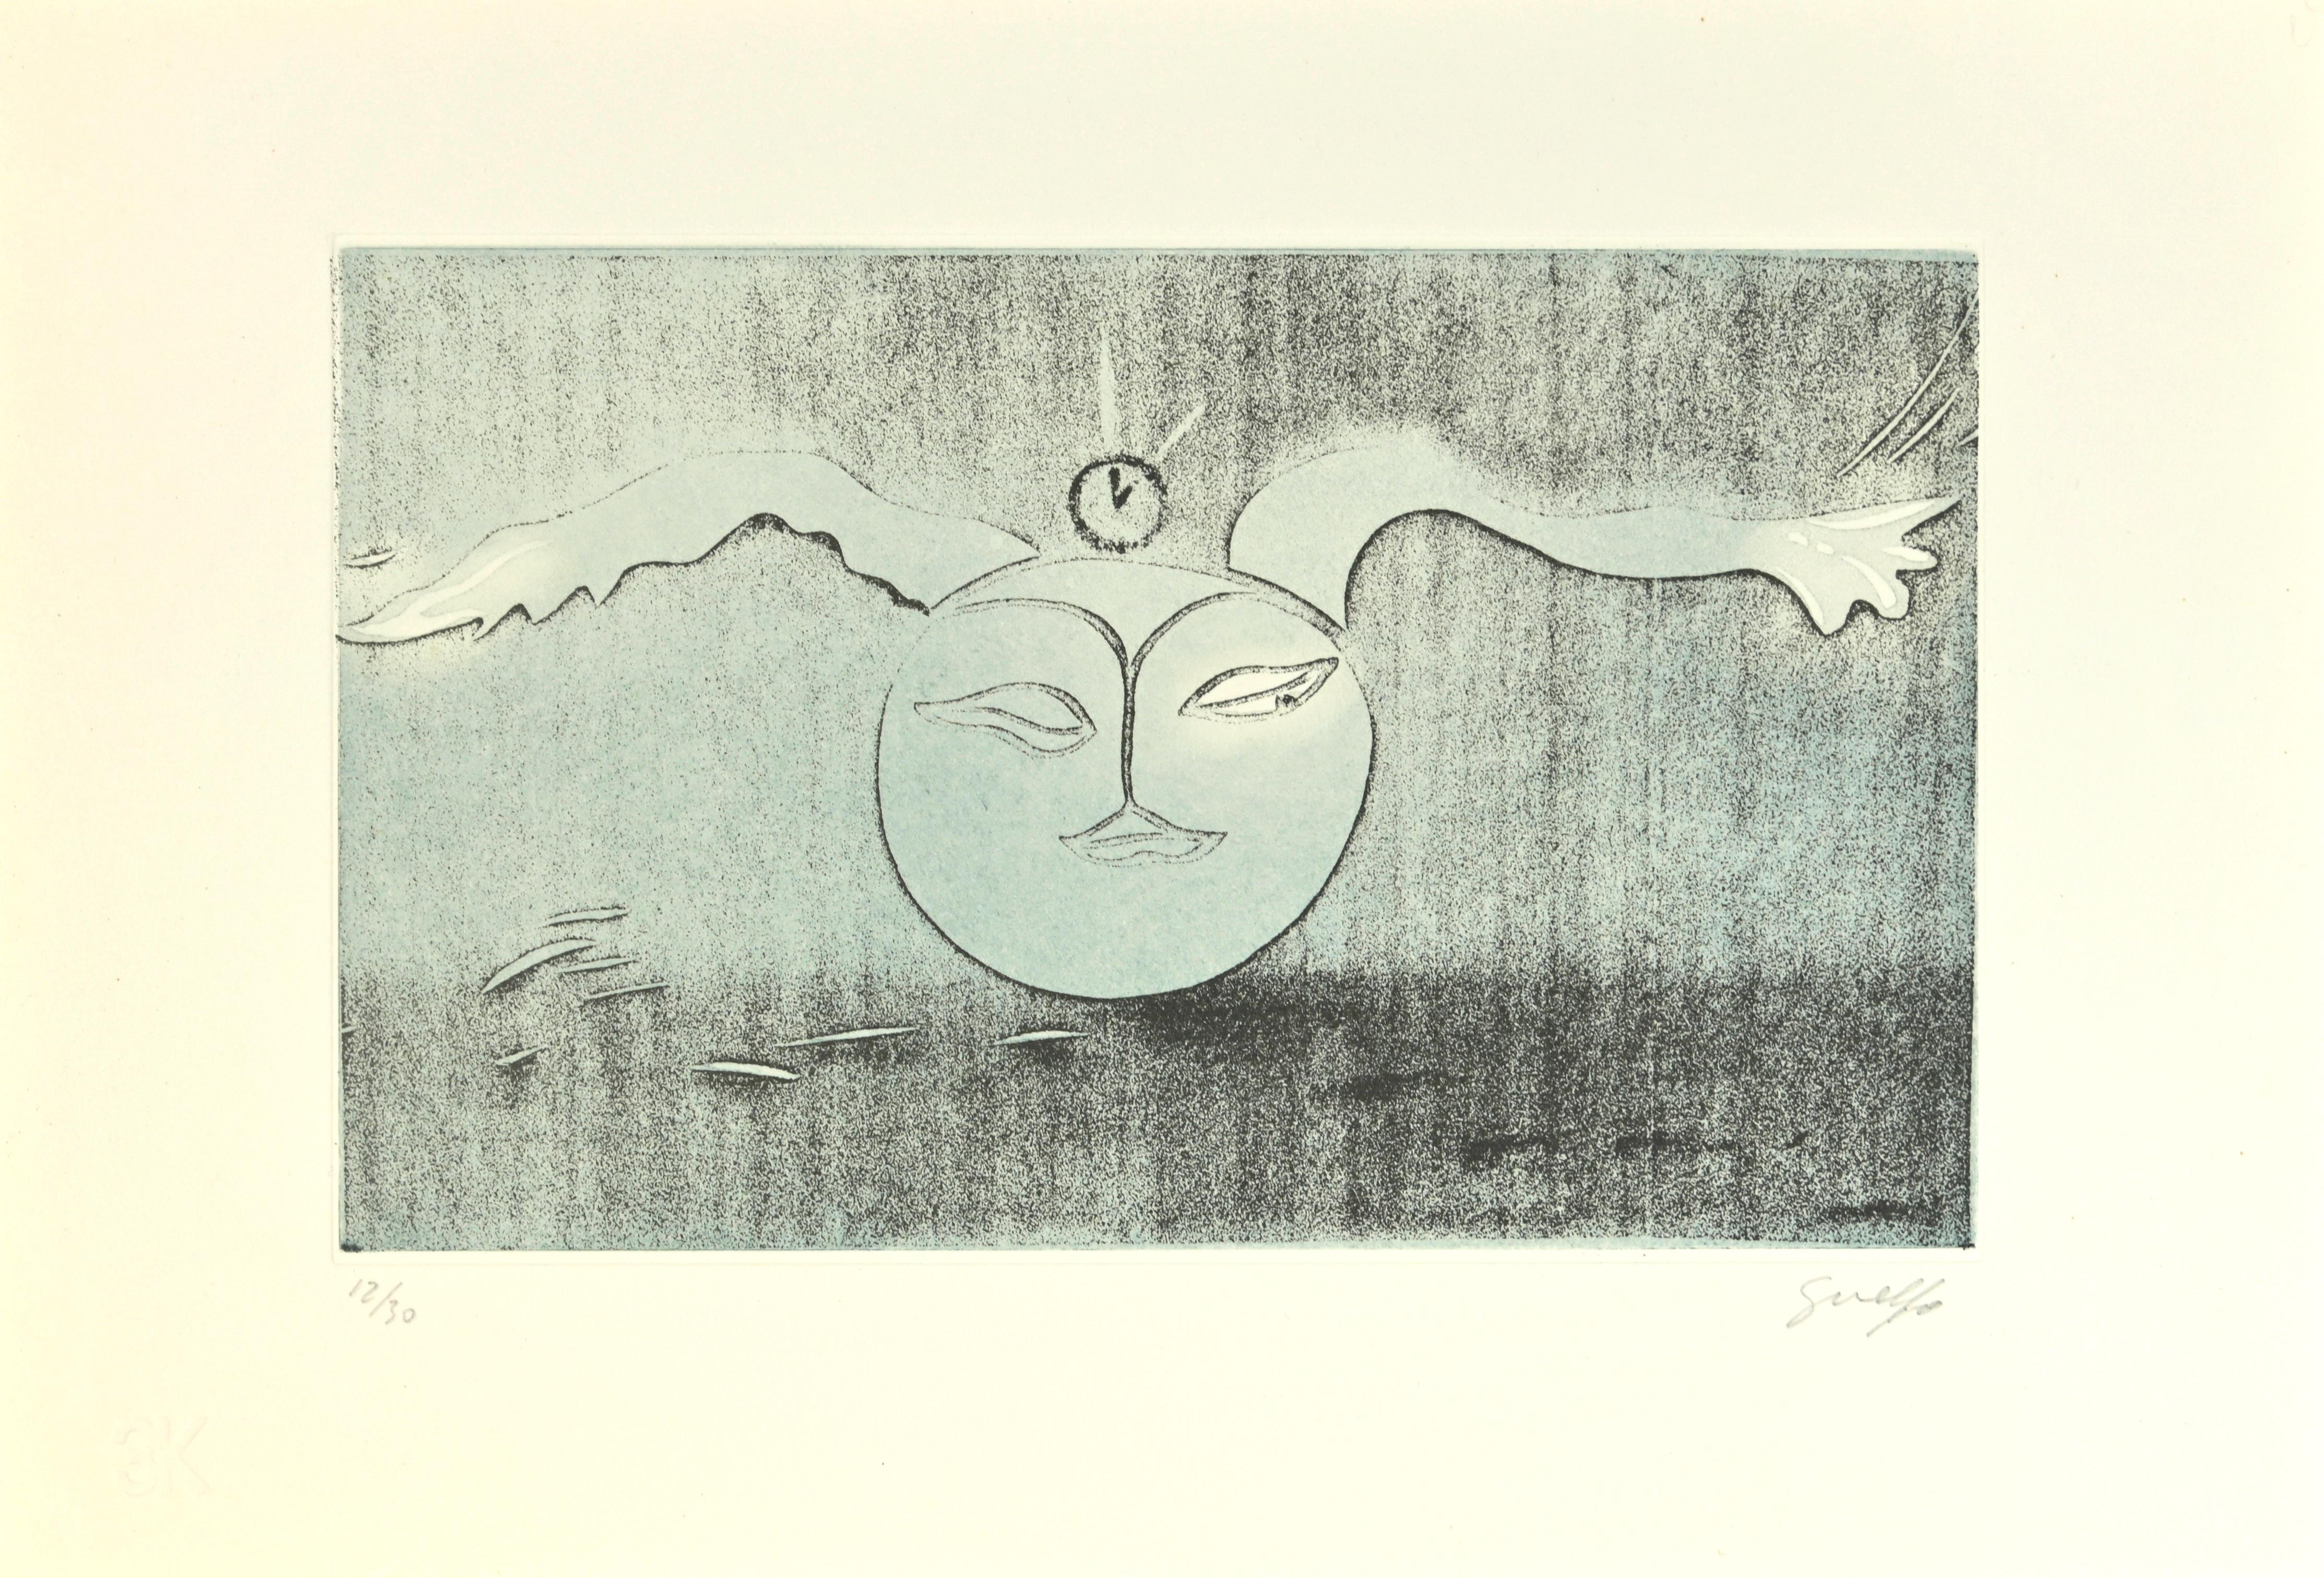 Lunar Poet - Etching by Guelfo Bianchini - 1978